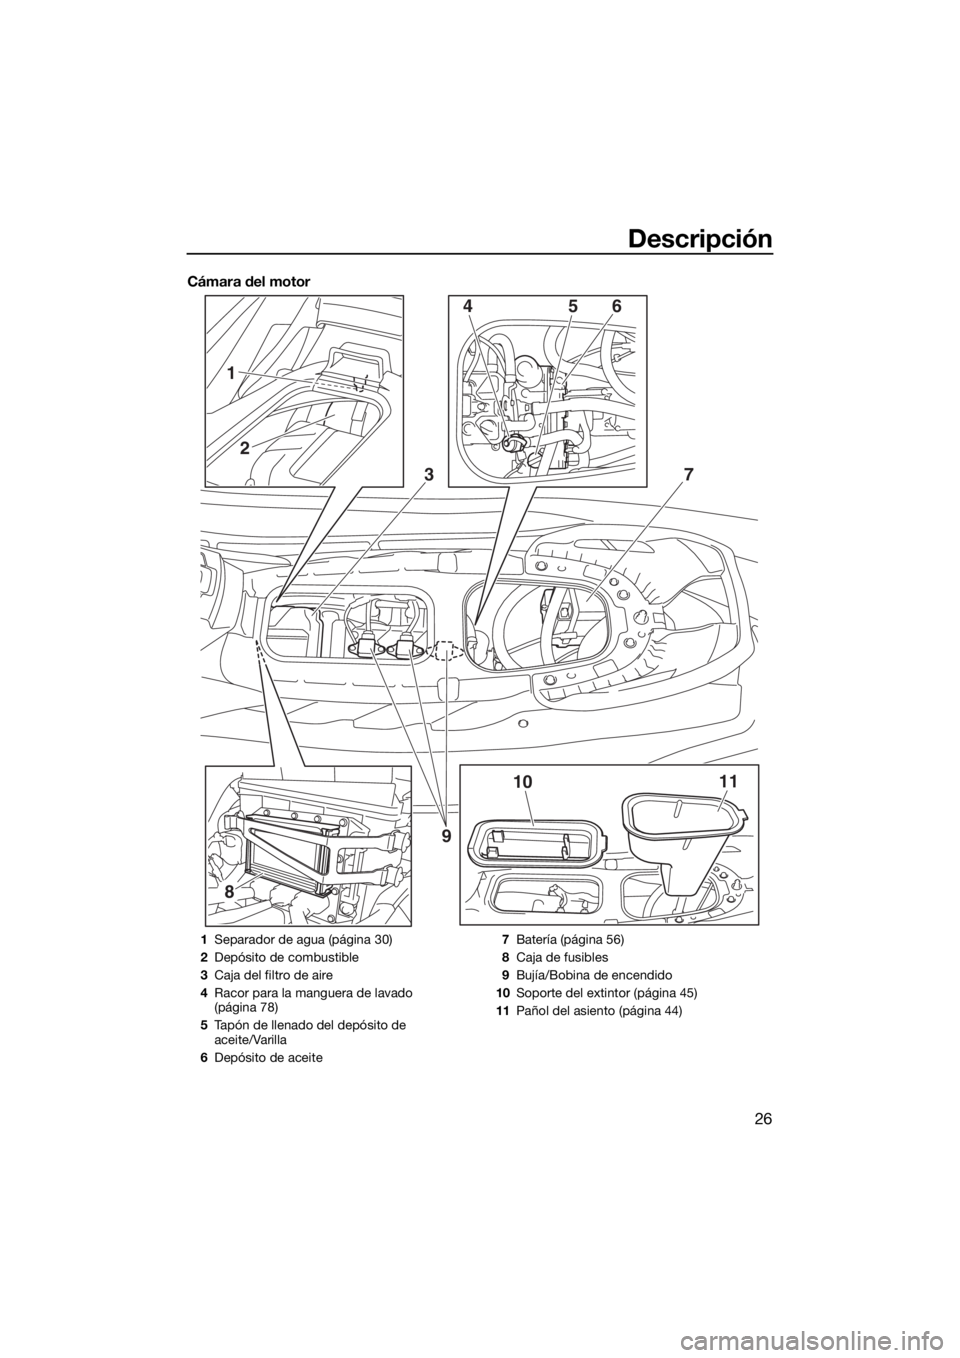 YAMAHA EX DELUXE 2018  Manuale de Empleo (in Spanish) Descripción
26
Cámara del motor
8
3
1011 4
2
156
7
9
1Separador de agua (página 30)
2Depósito de combustible
3Caja del filtro de aire
4Racor para la manguera de lavado 
(página 78)
5Tapón de lle